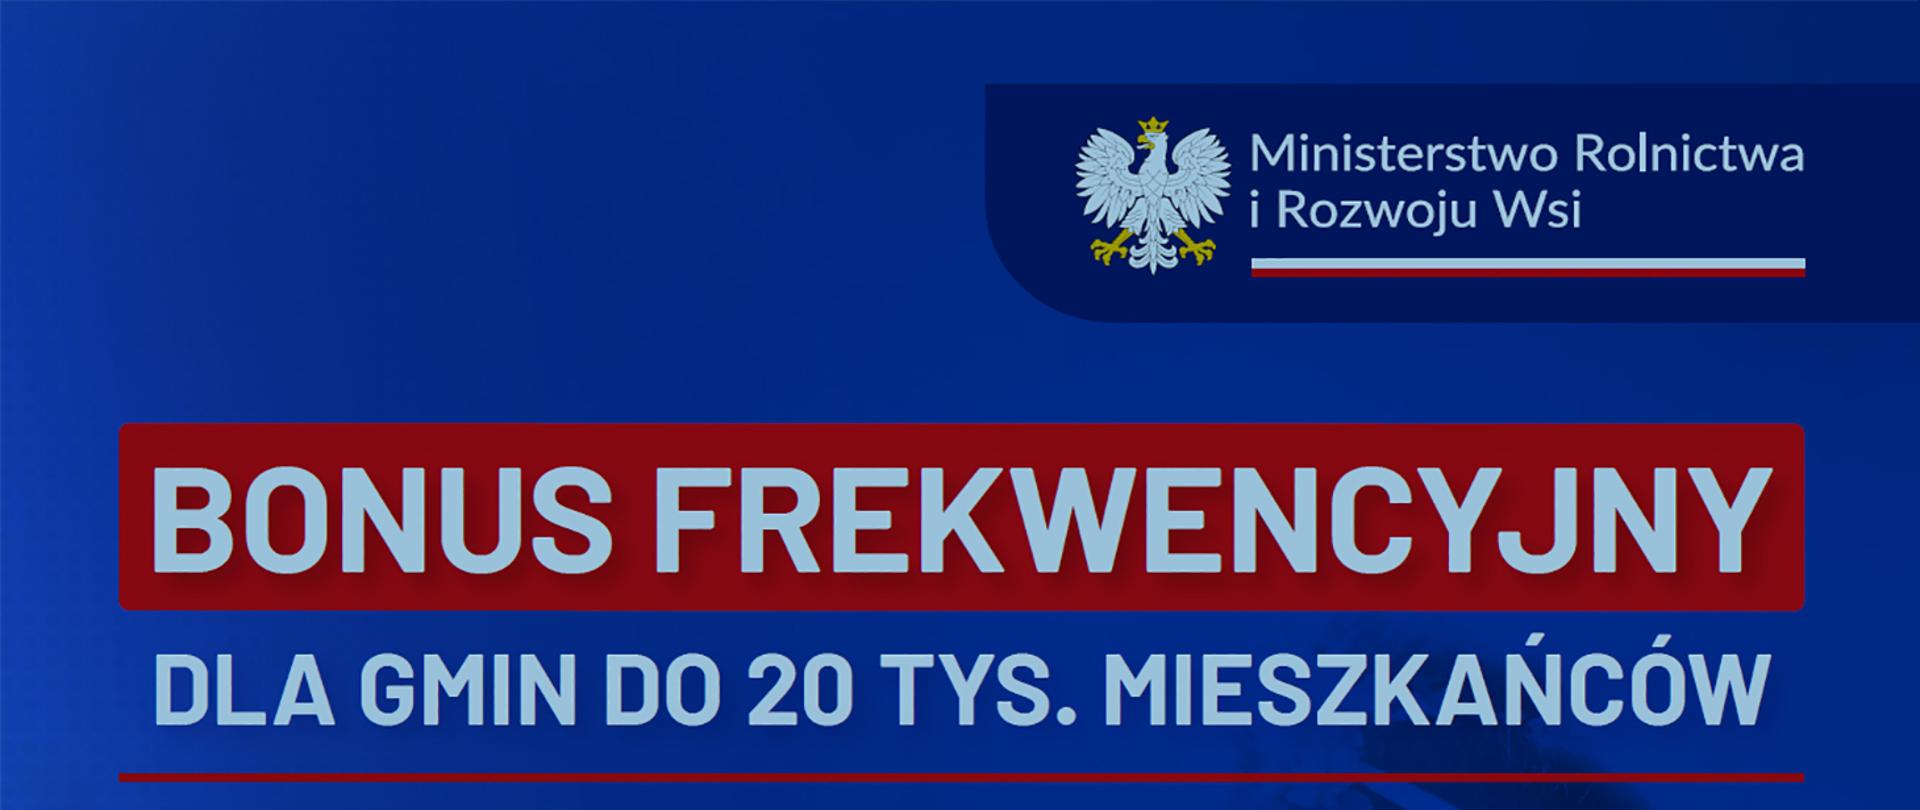 Niebieski baner ministerstwa rolnictwa z napisem bonus frekwencyjny